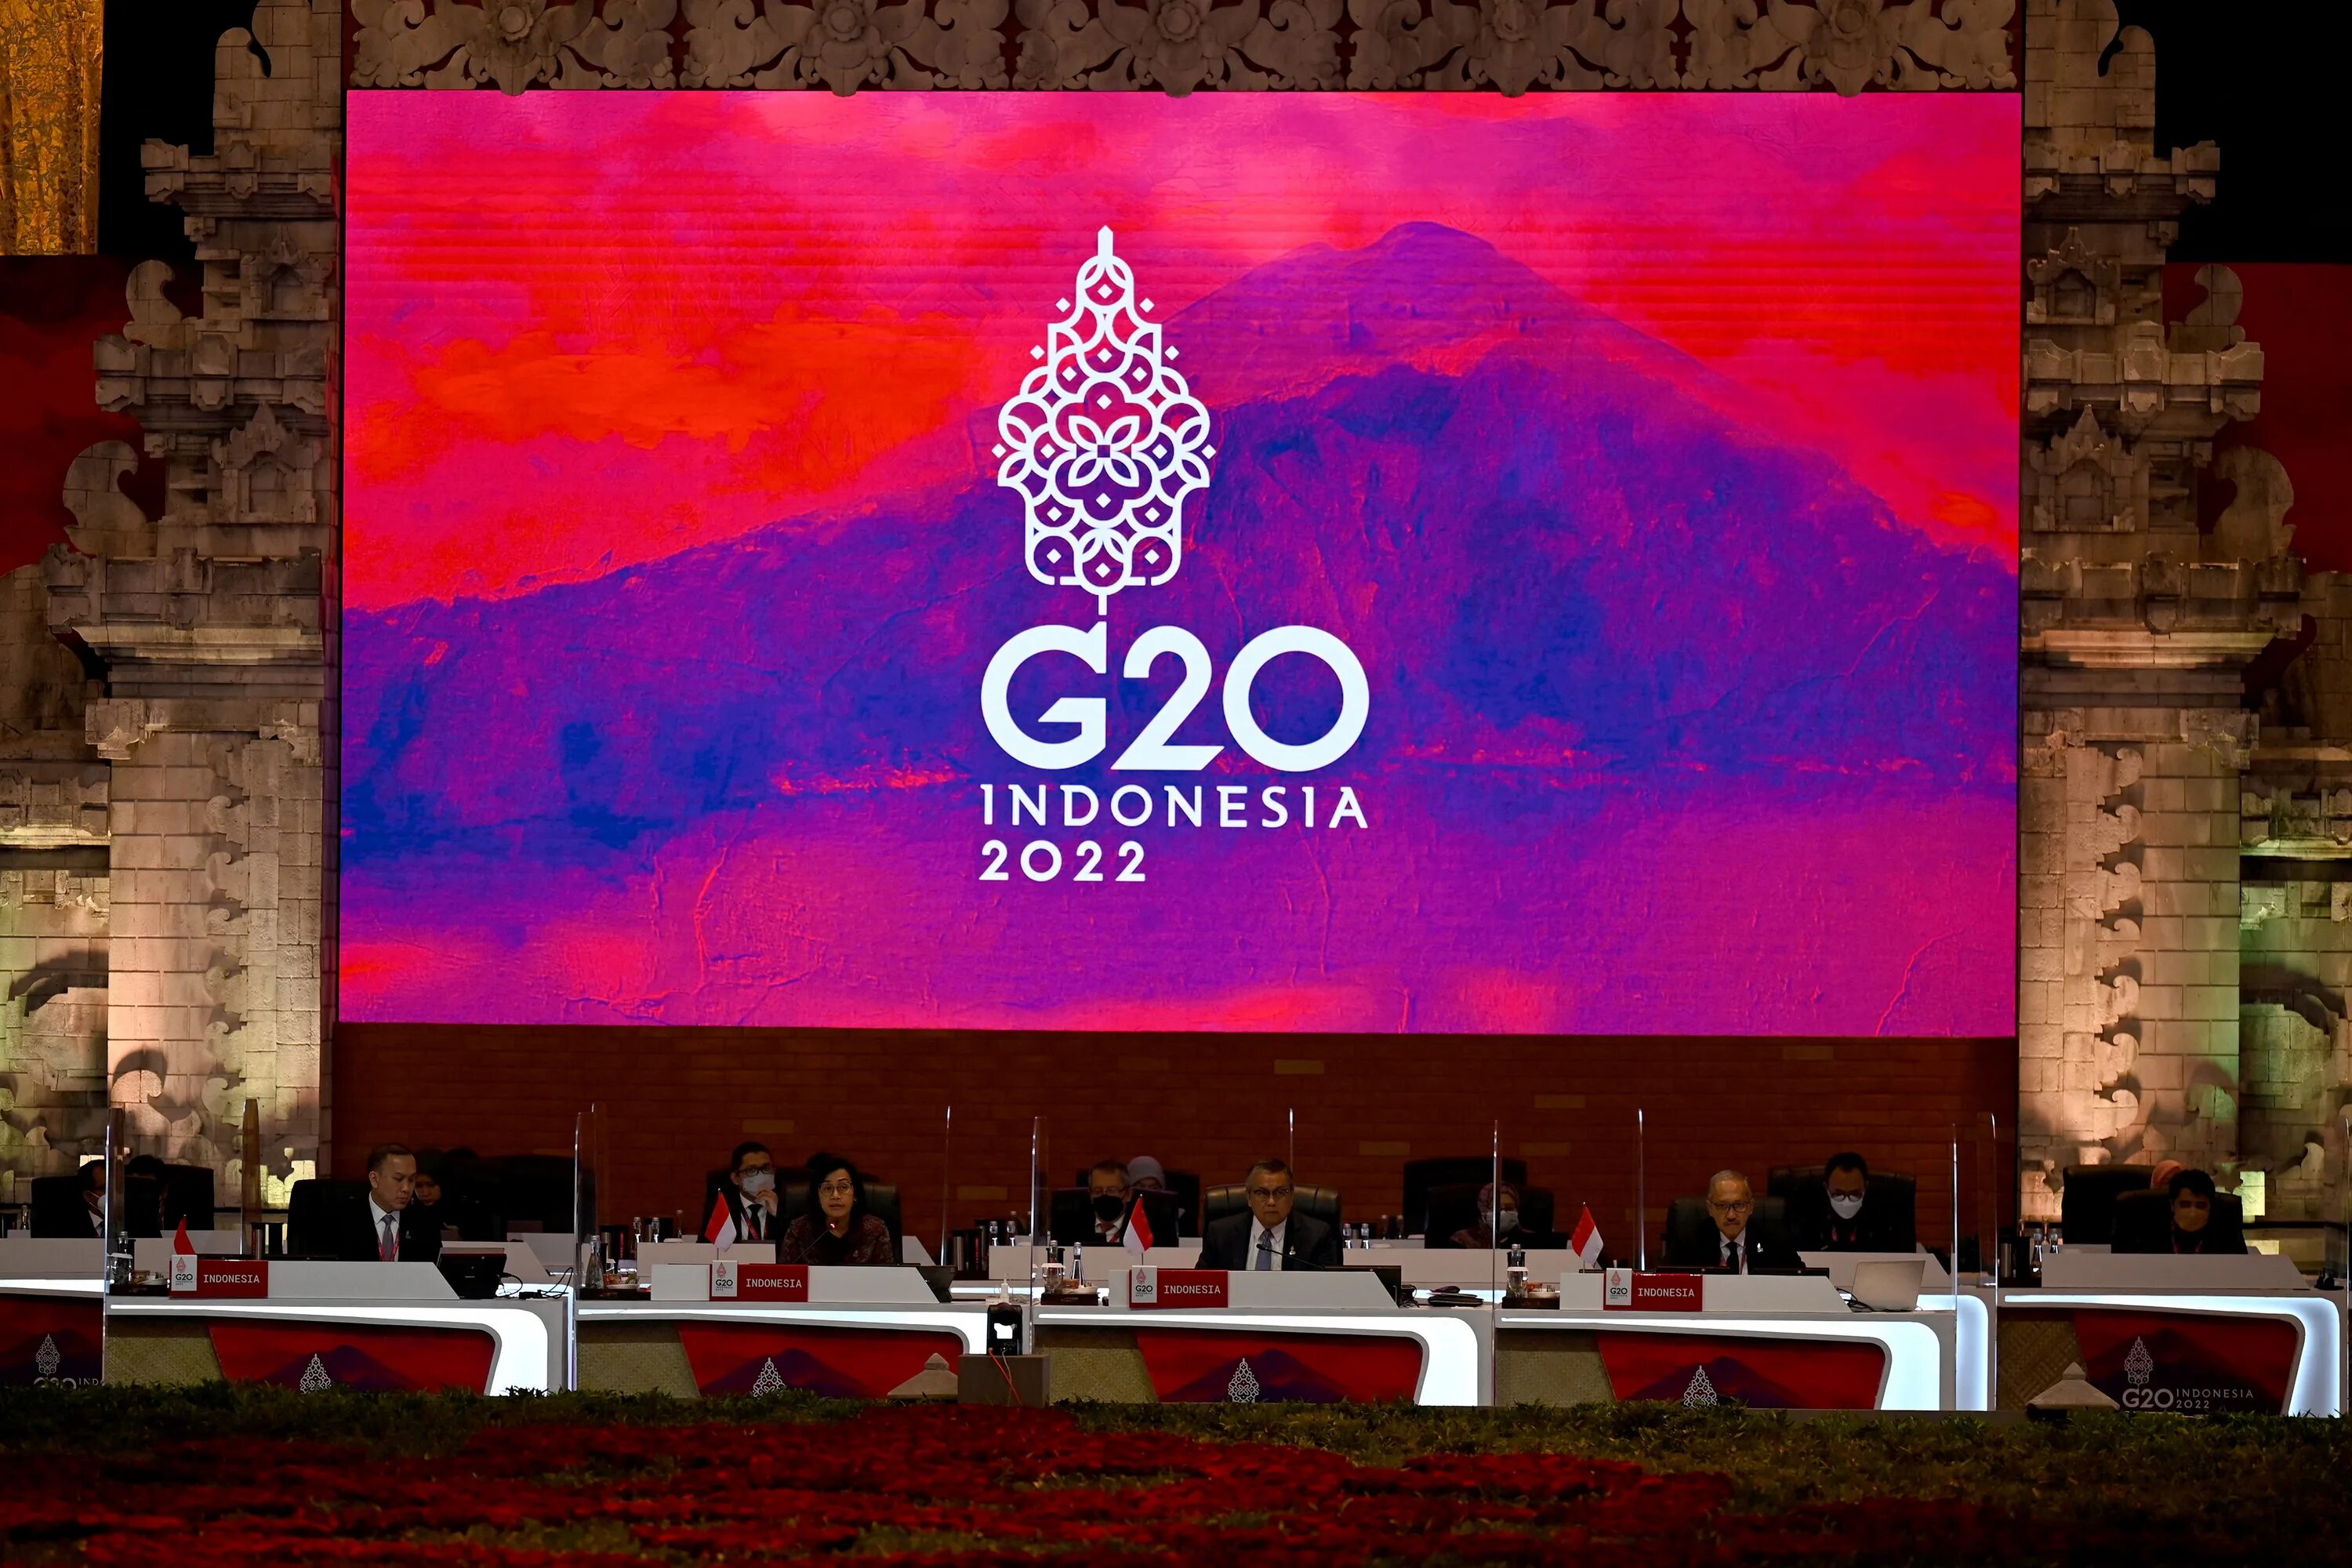 Саммит 2022. G20 в Индонезии, Бали 2022. Саммит g20 на Бали. Саммит g-20 на Бали (2022).